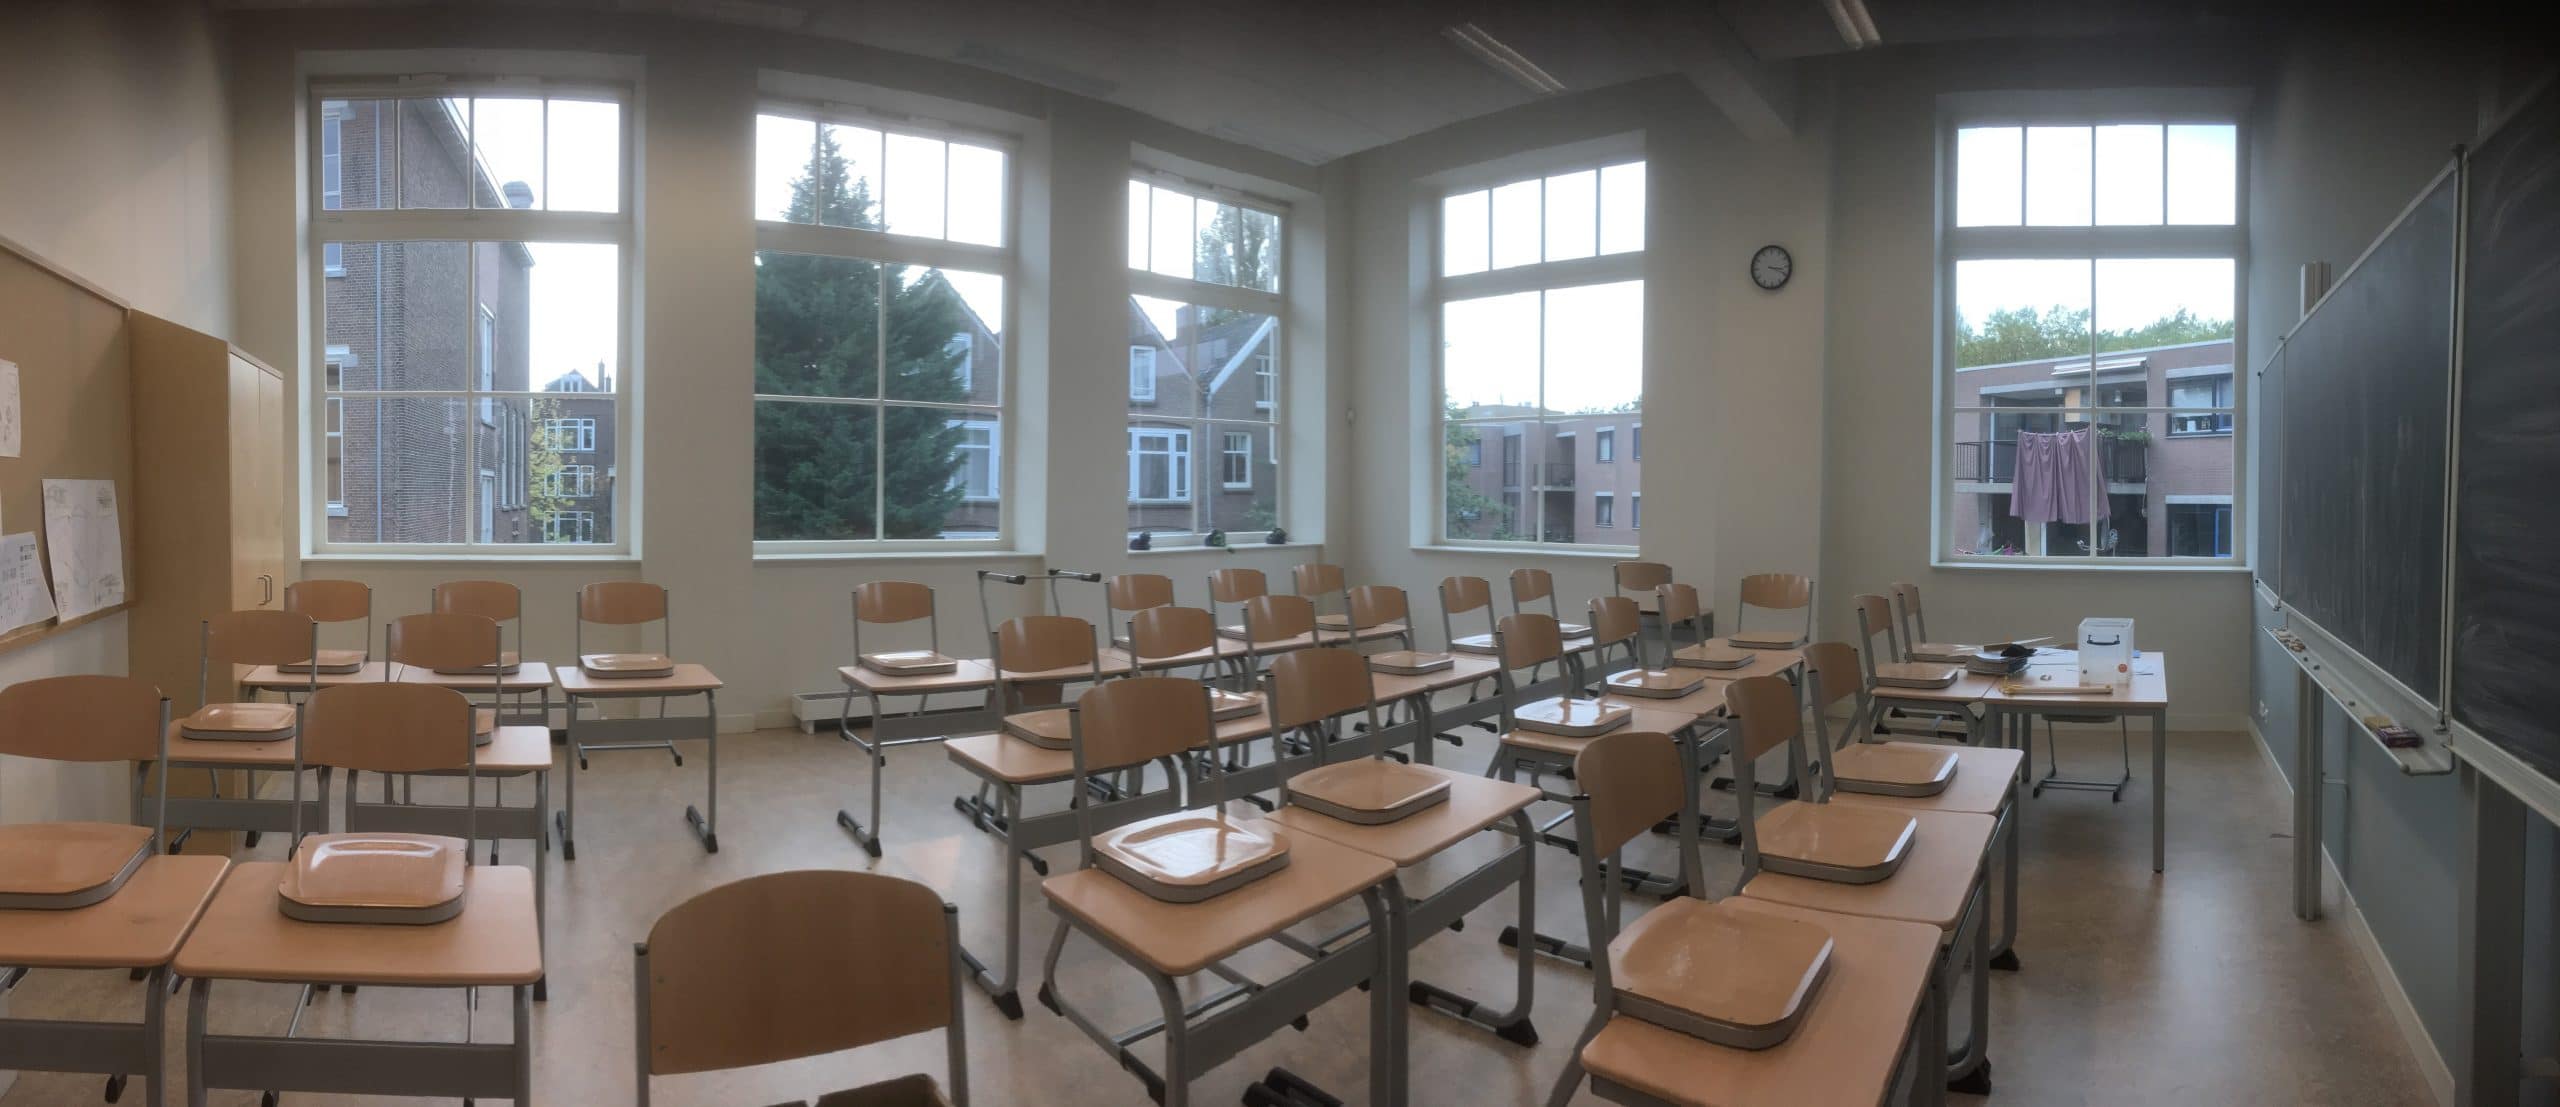 Rotterdam - School lokaal voorzien van Sunblock Extra Clearview 70 teneinde zonnewarmte opwarming te bestrijden